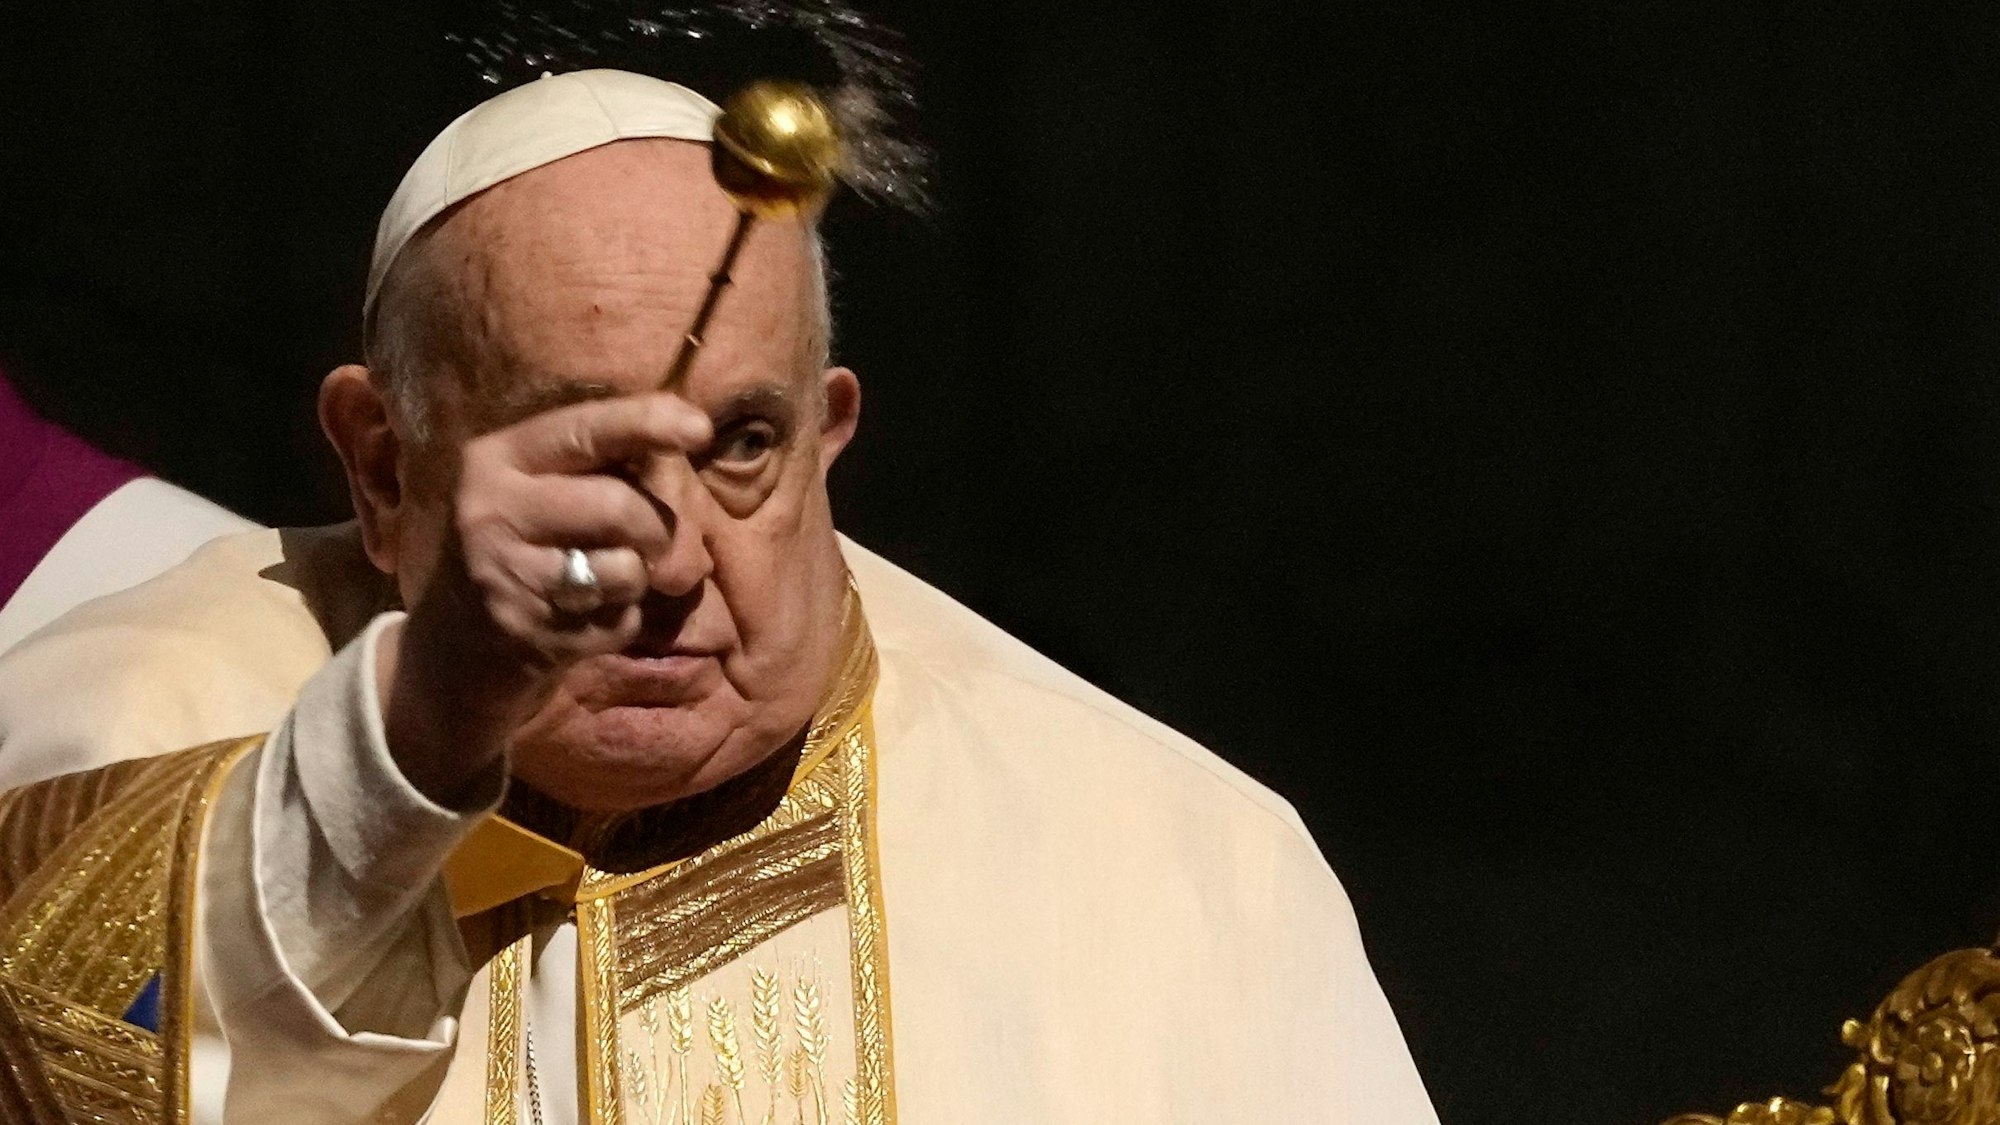 Papst Franziskus besprengt Gläubige bei einer Messe im Petersdom mit Weihwasser.